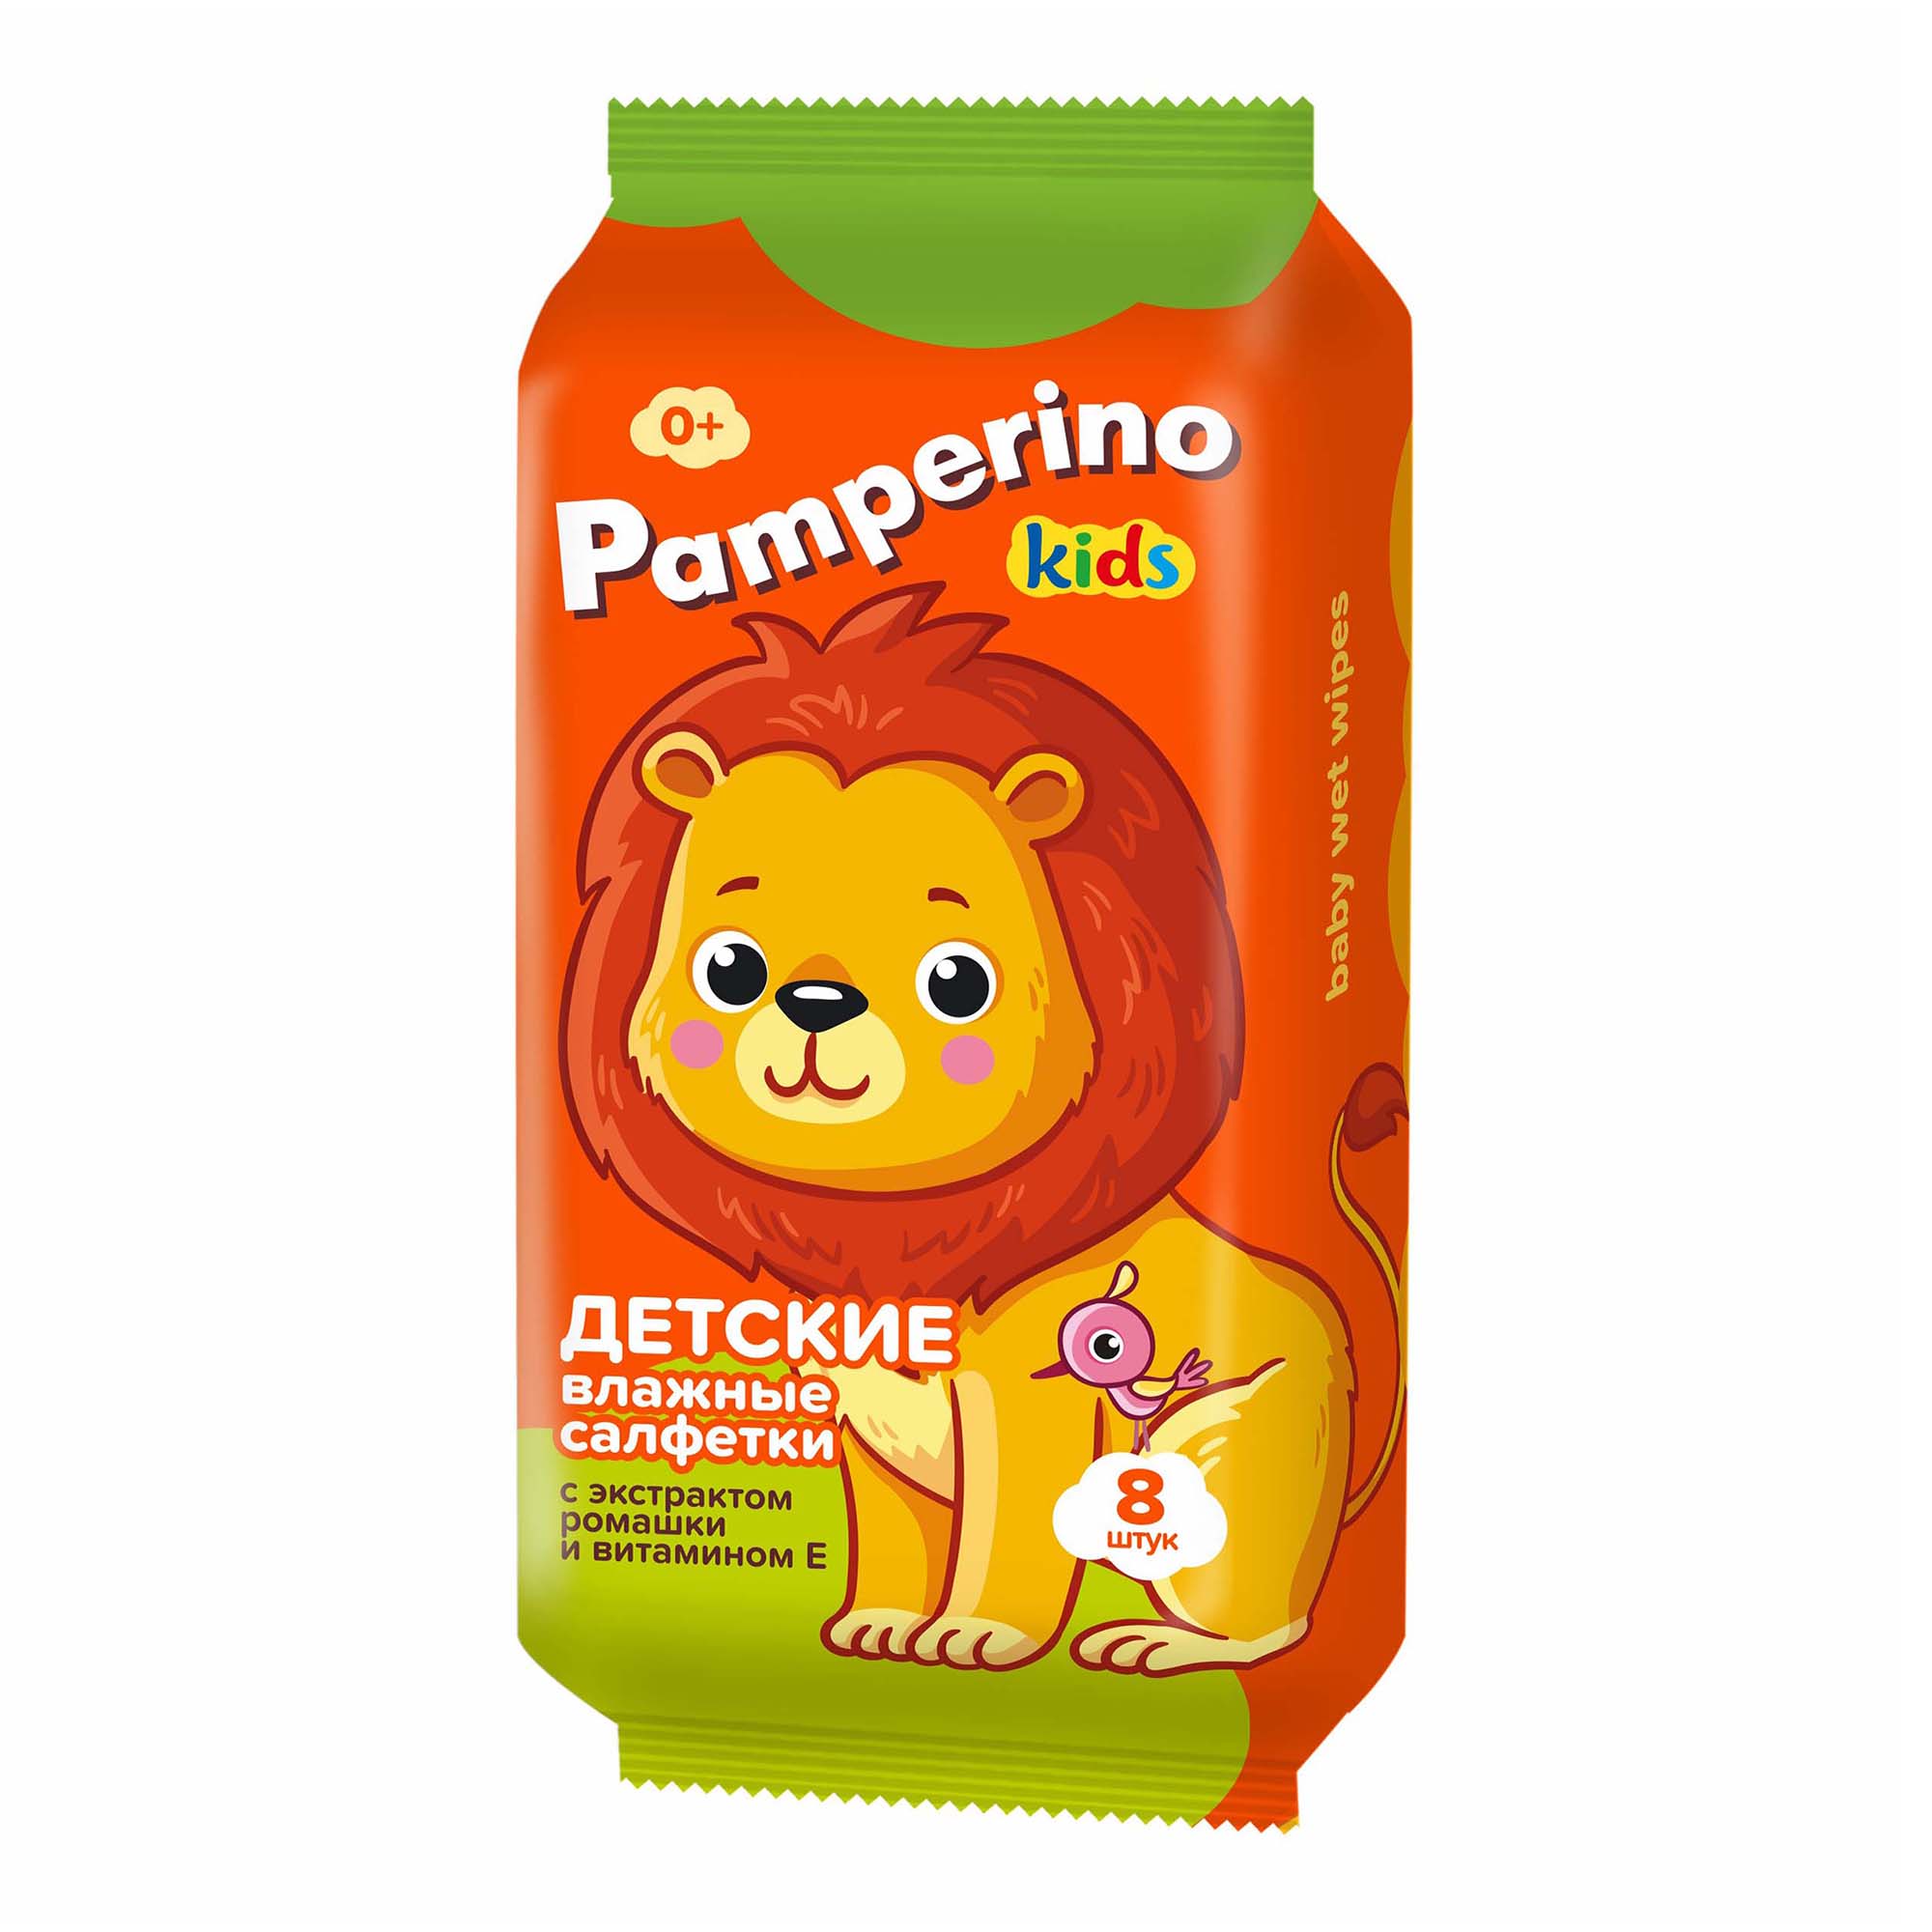 Салфетки влажные детские Pamperino mix New Kids с ромашкой и витамином Е 8 шт